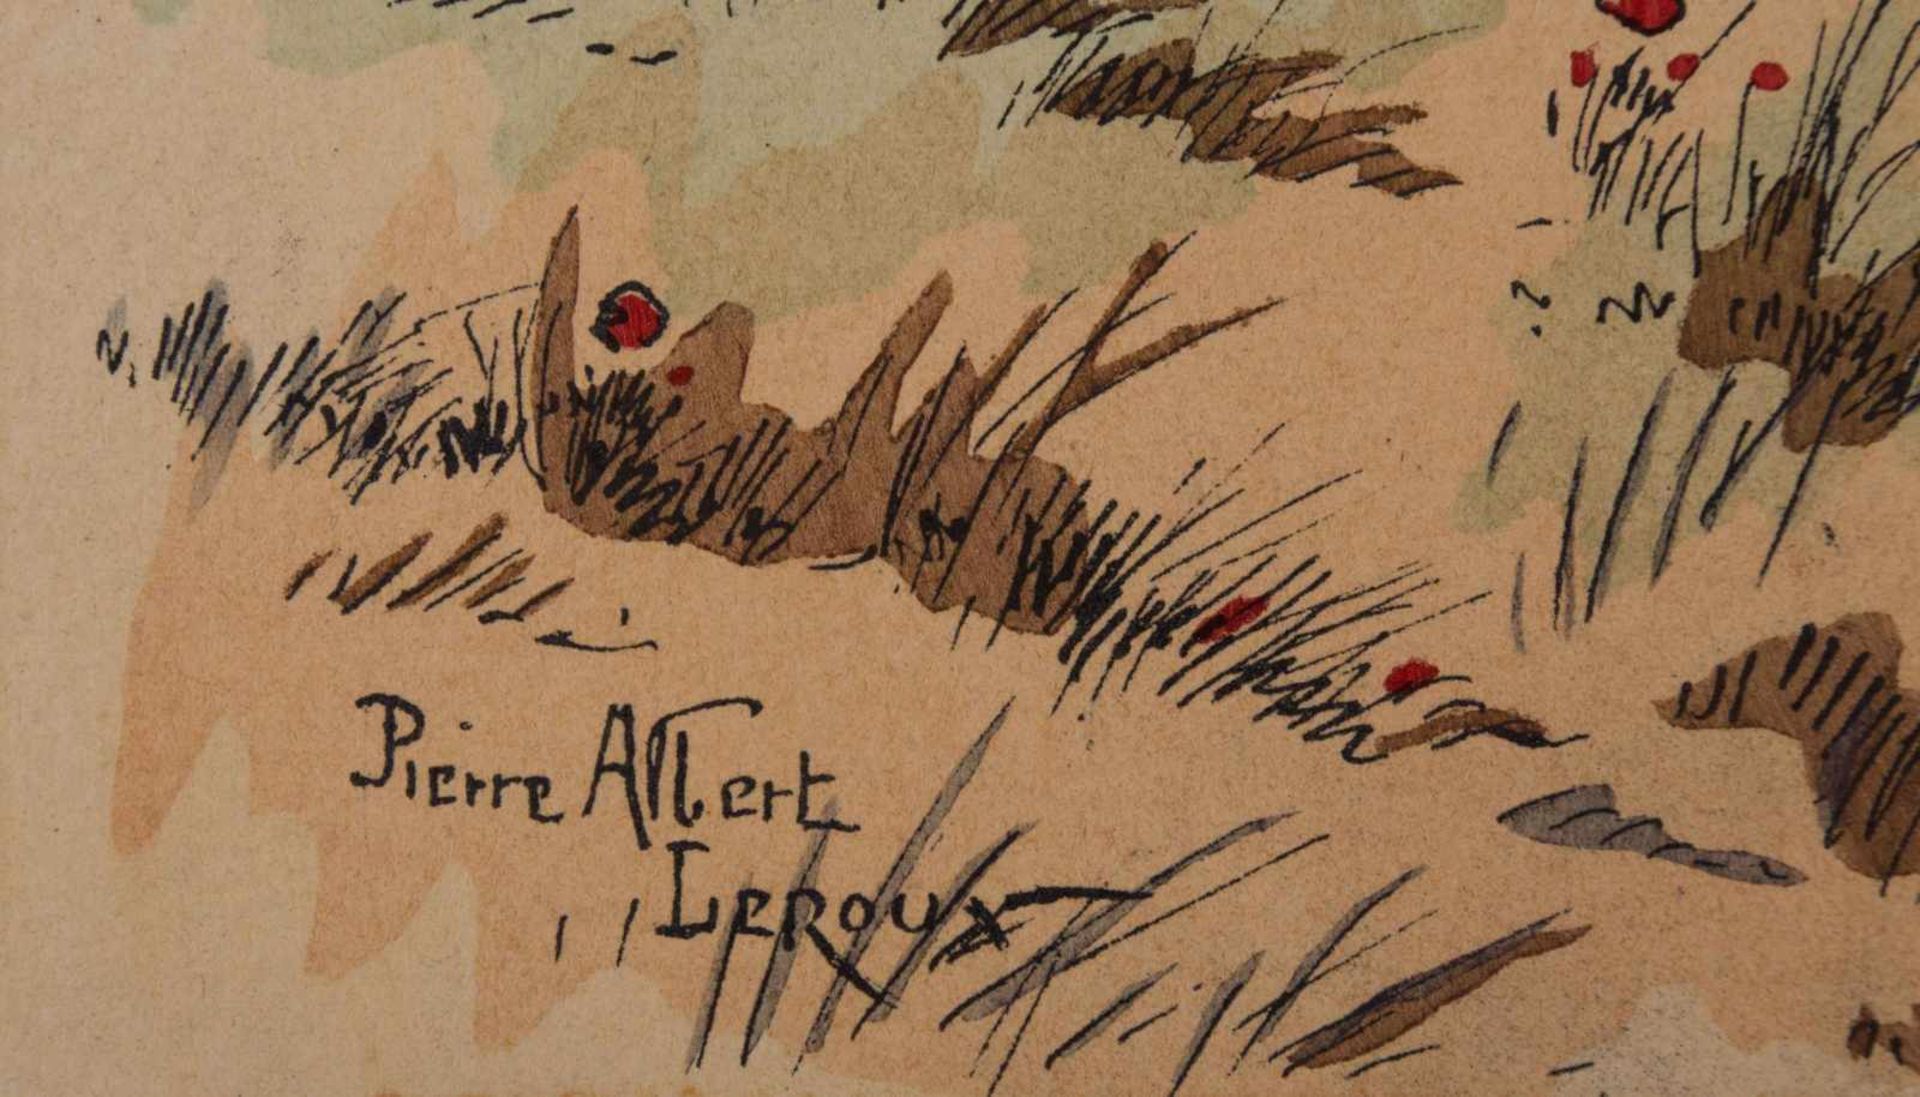 Pierre Albert LEROUX (1890-1959) "Artillerie" Zeichnung-Aquarell, weißgehöht, Bütten, 24,3 cm x 16,7 - Bild 4 aus 5